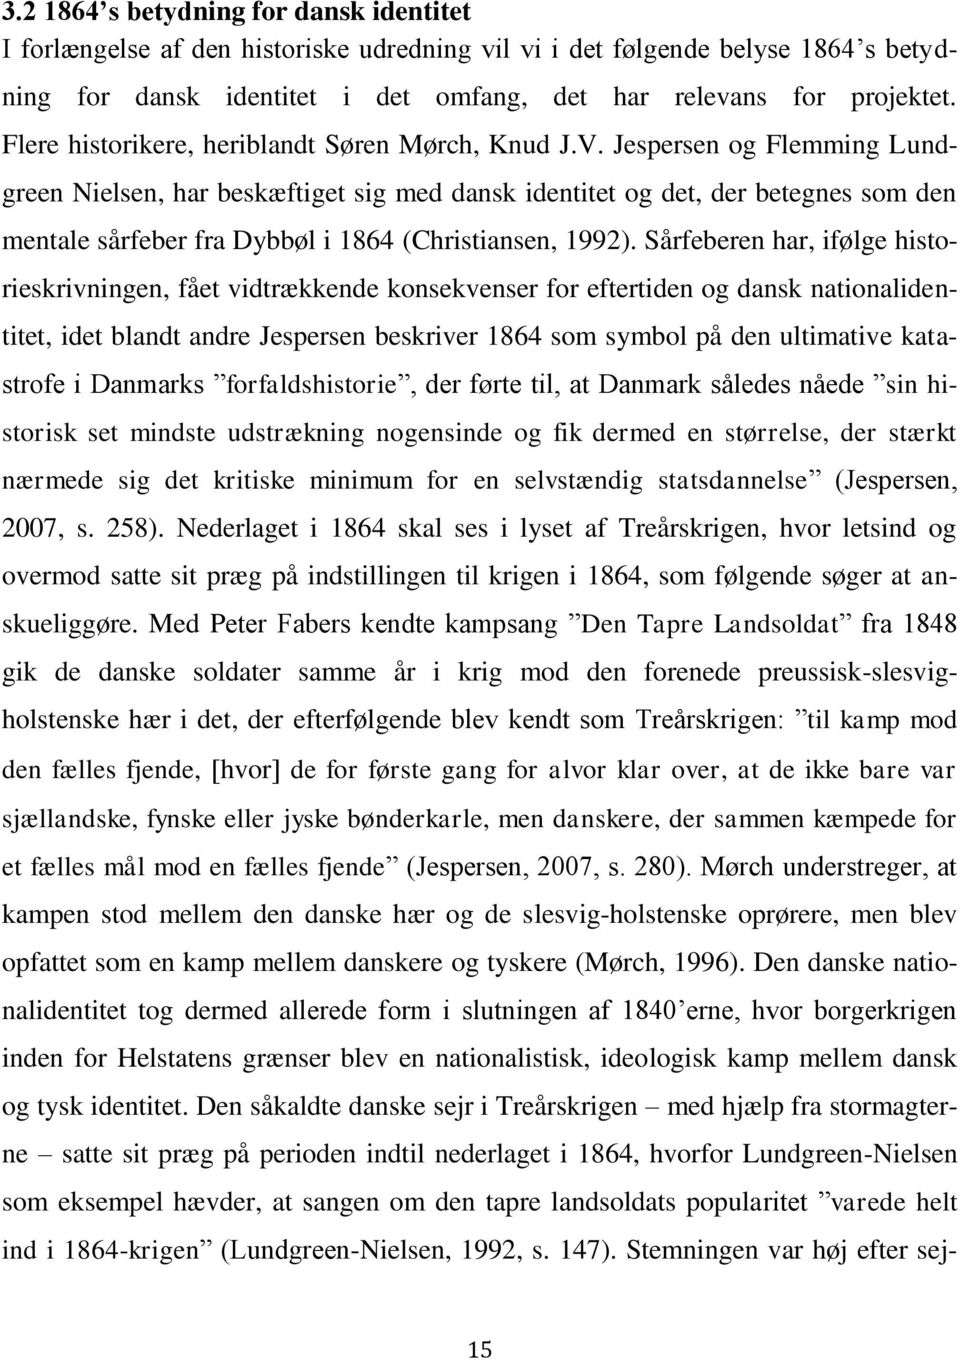 Jespersen og Flemming Lundgreen Nielsen, har beskæftiget sig med dansk identitet og det, der betegnes som den mentale sårfeber fra Dybbøl i 1864 (Christiansen, 1992).